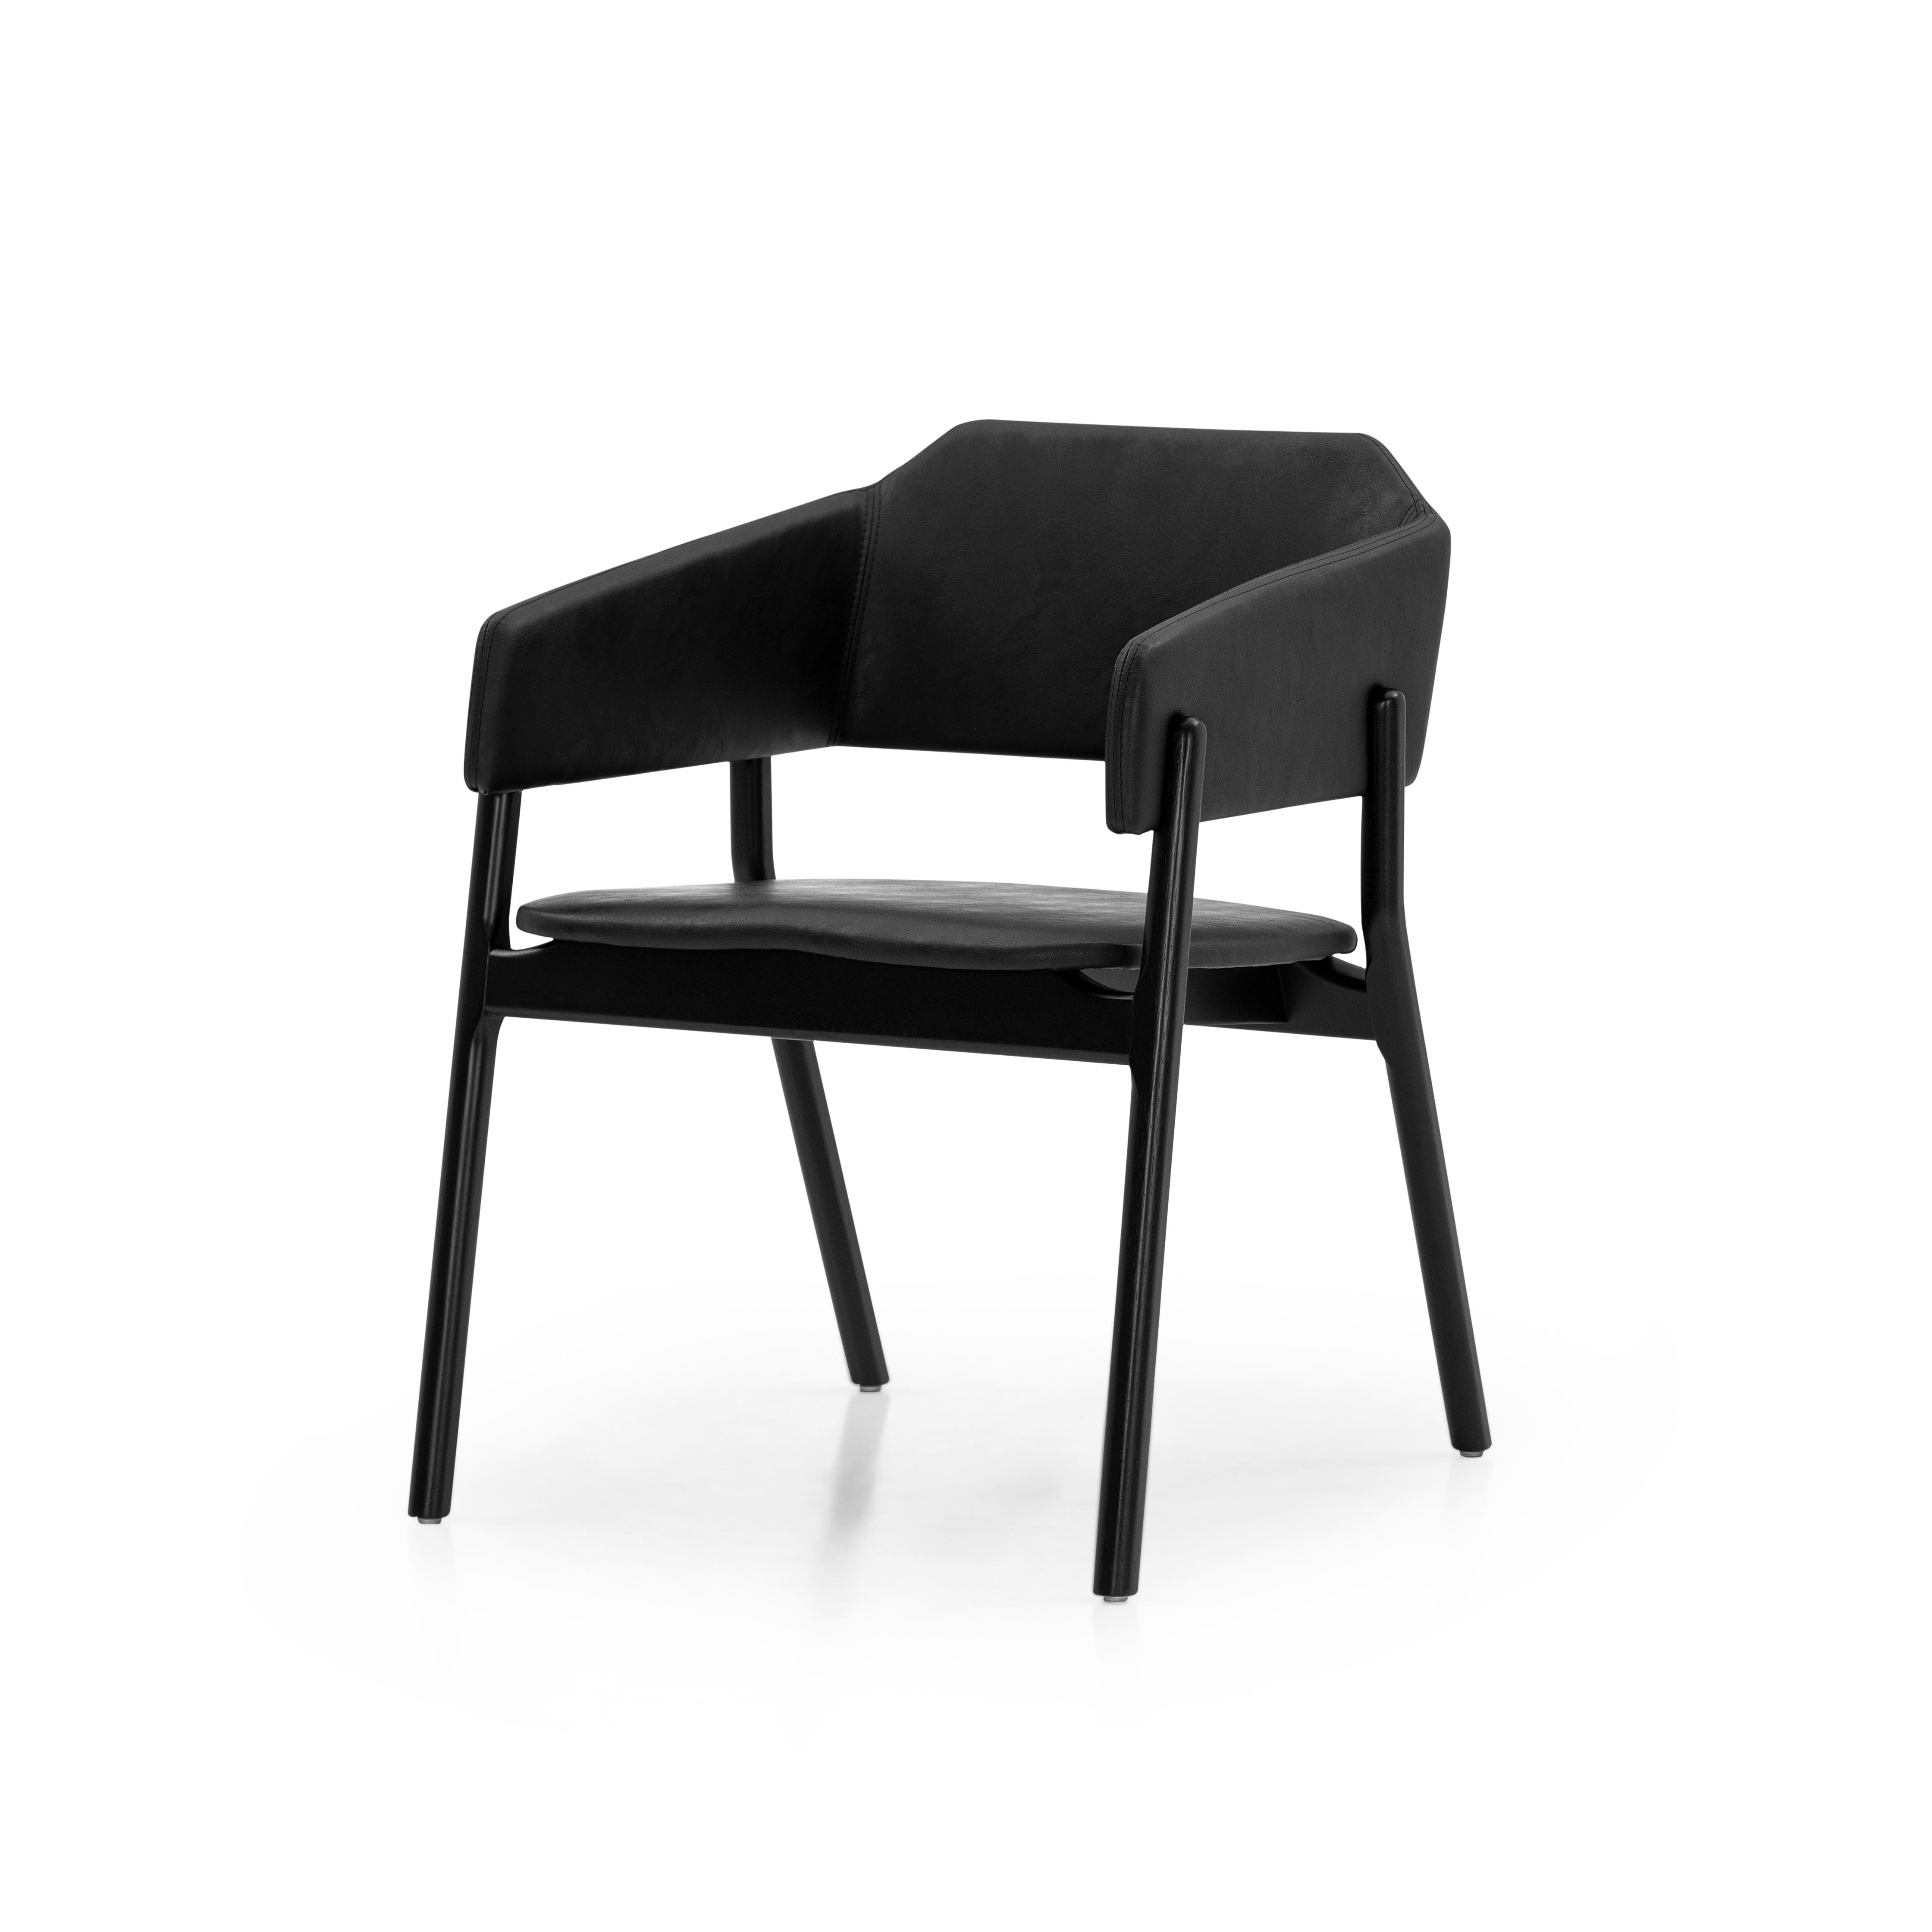 Notre équipe Uultis a créé cette magnifique chaise de salle à manger Stuzi pour décorer votre belle table de salle à manger avec un tissu noir et une finition en bois noir. Cette chaise a un beau design simple mais élégant qui va parfaitement se